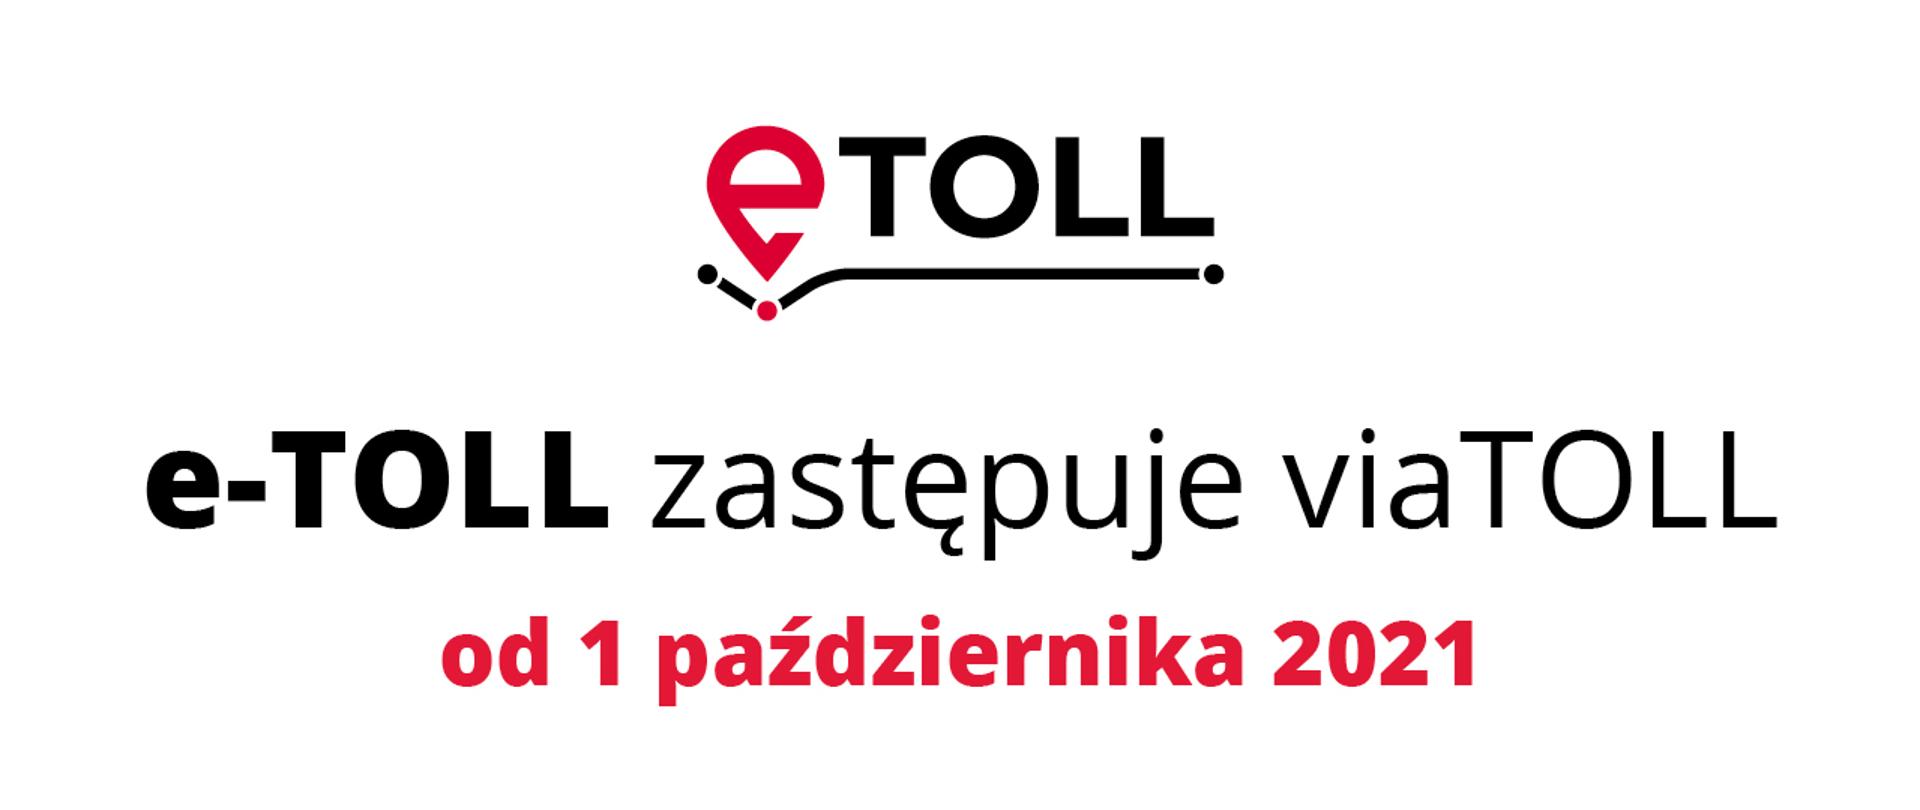 Logo e-TOLL i napis: e-TOLL zastępuje viaTOLL od 1 października 2021